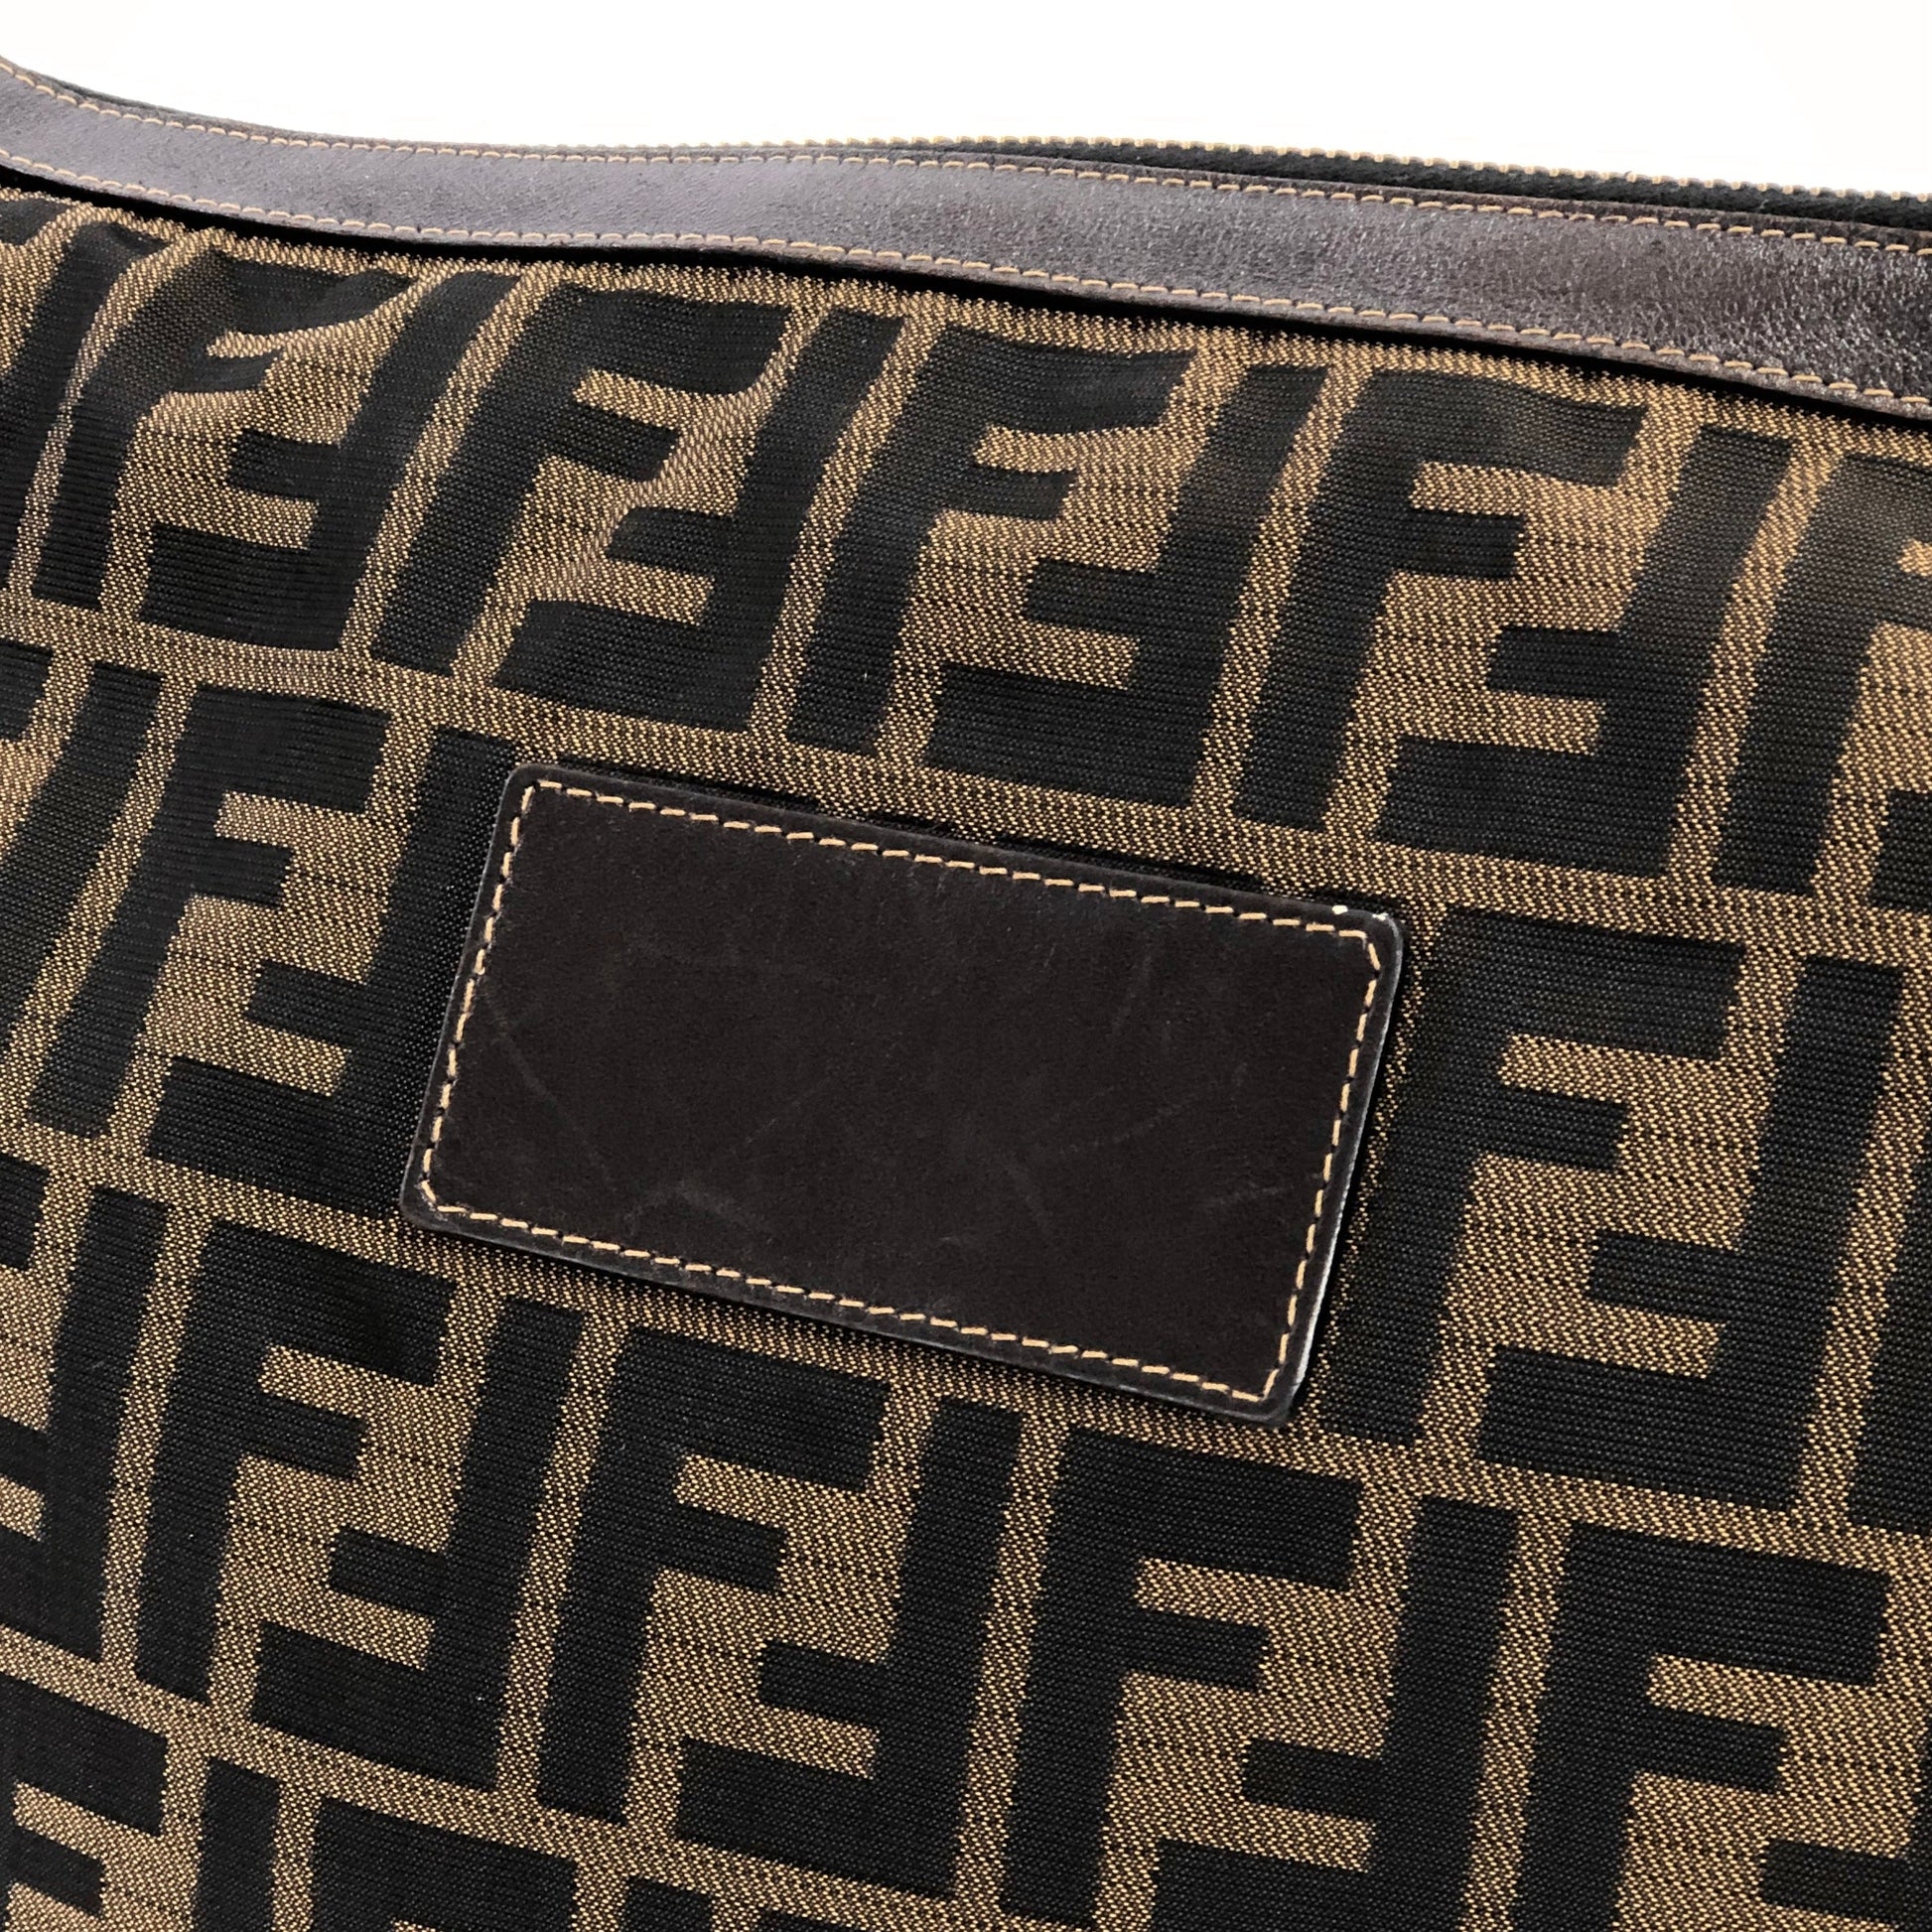 FENDI Zucca FF logo jacquard leather clutch bag brown vintage old